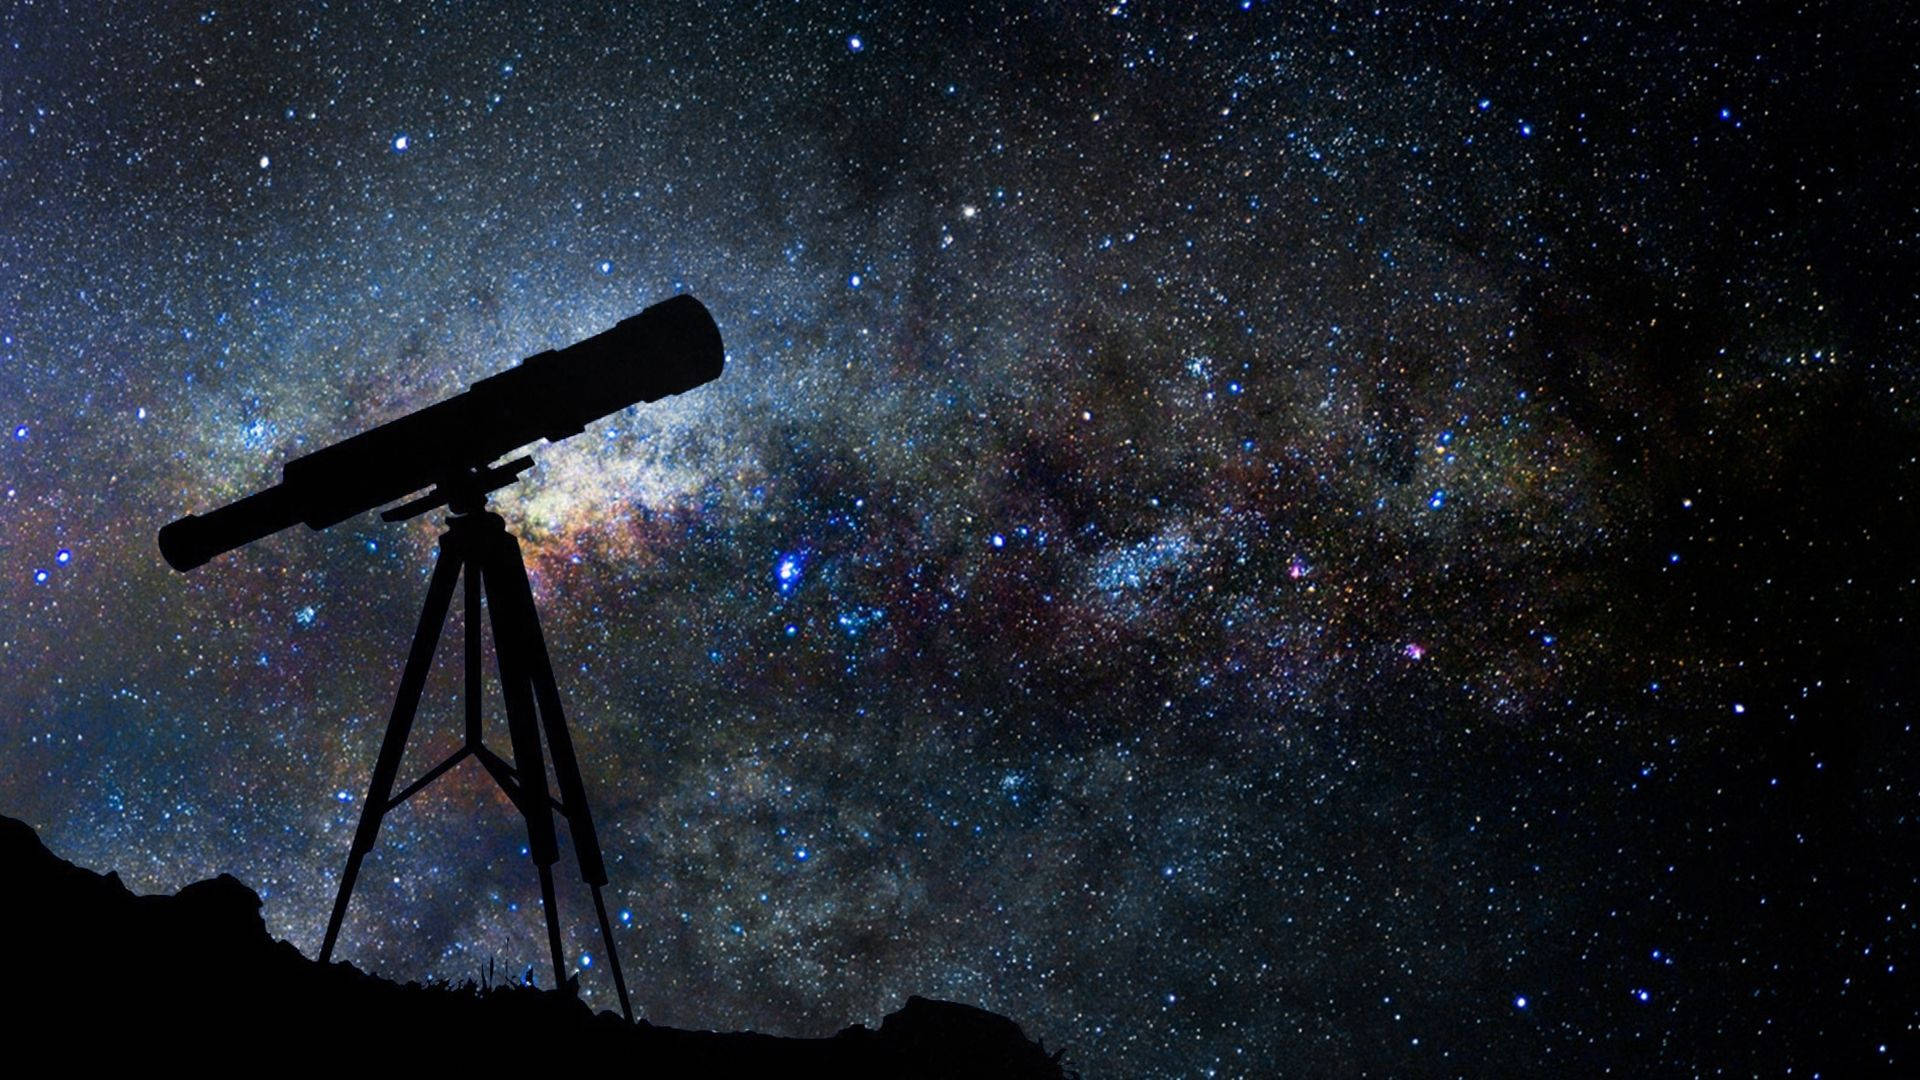 Telescope Silhouette Against Scenic Night Sky Wallpaper